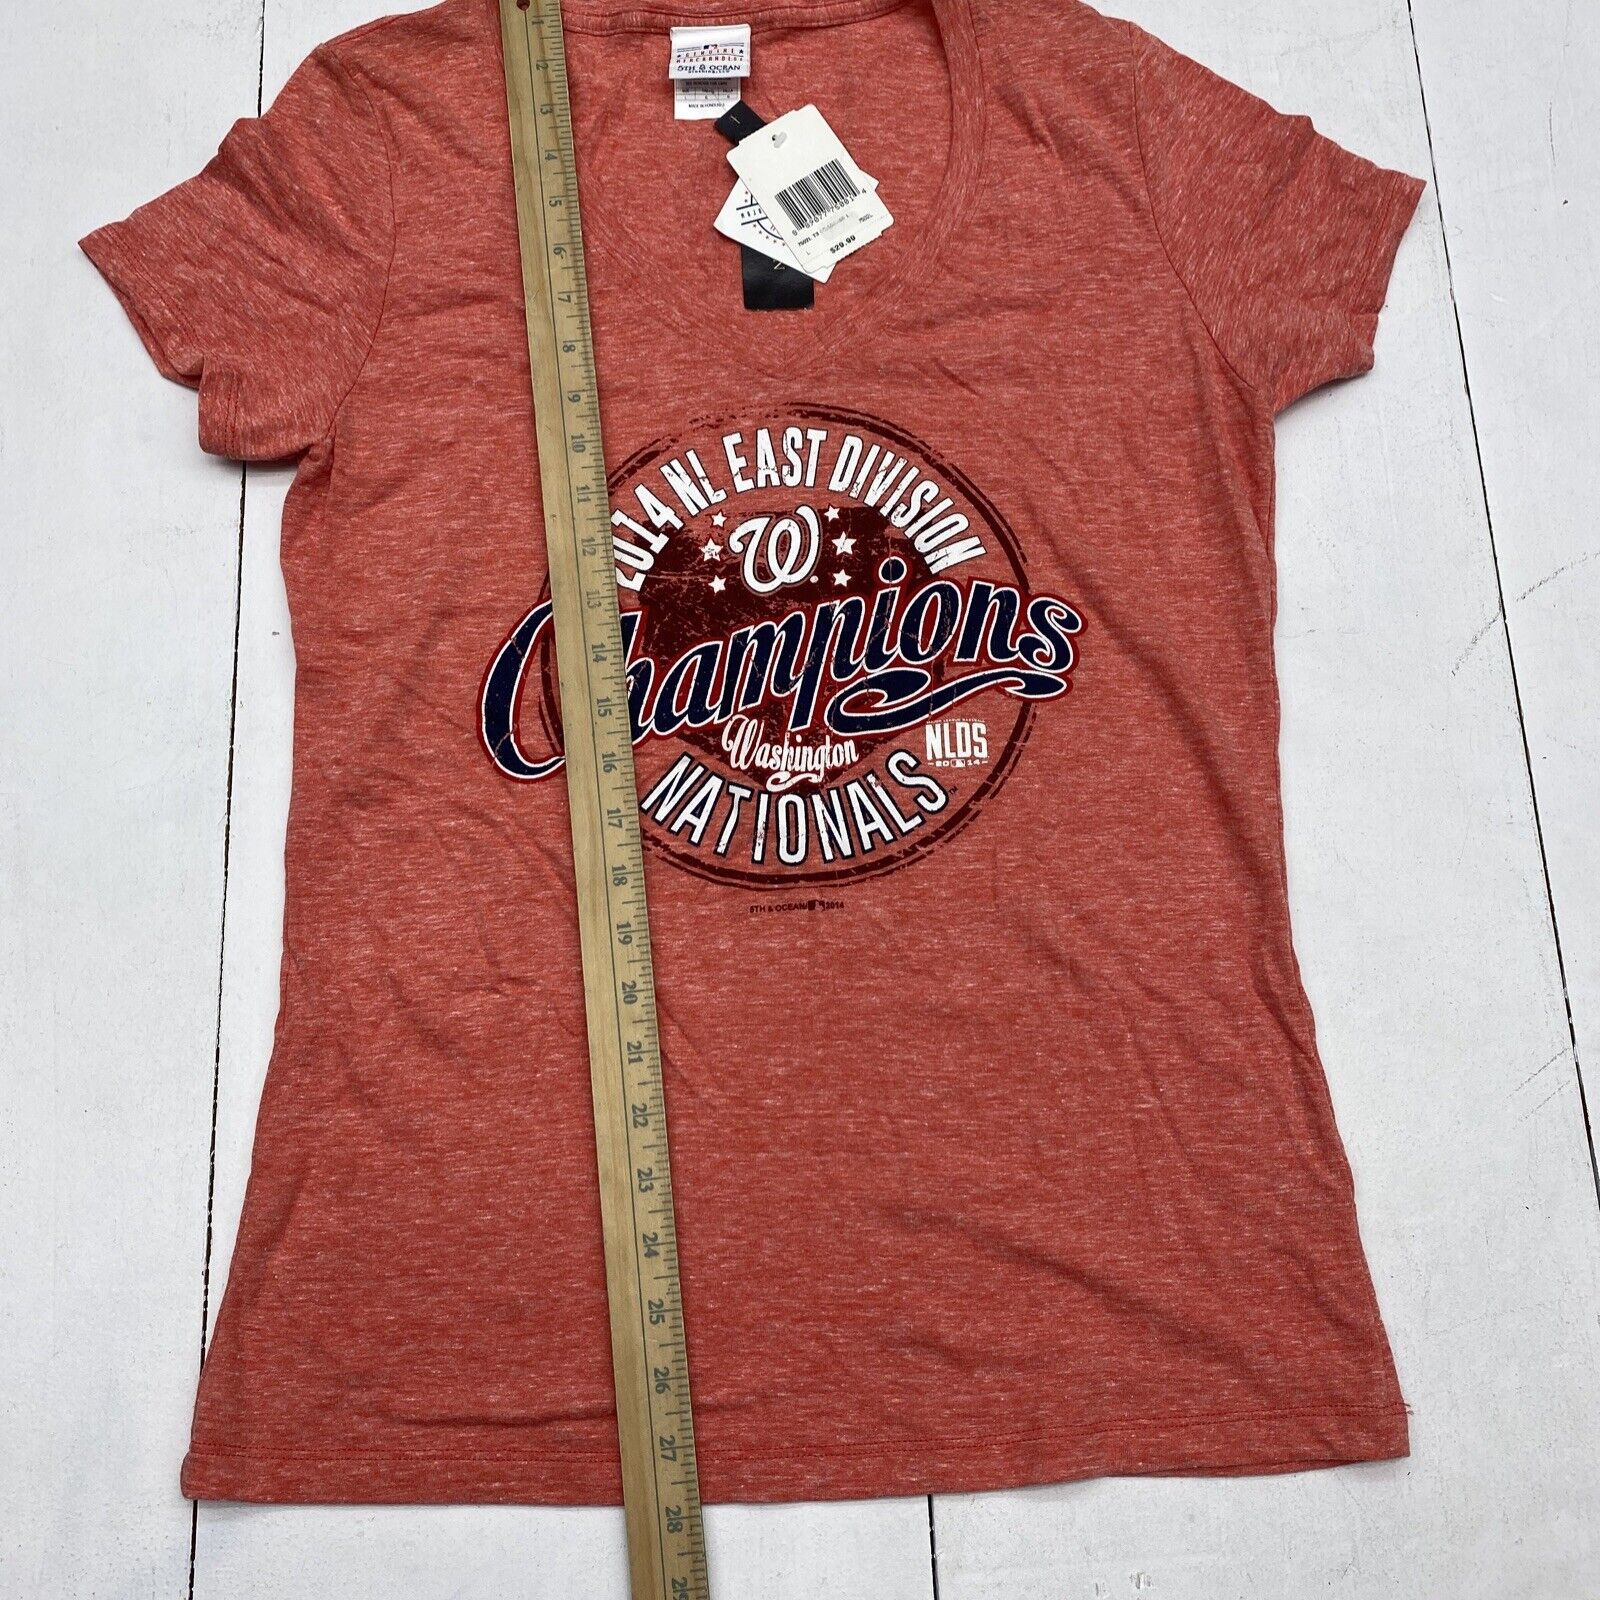 Genuine Merchandise Washington Nationals MLB Red T Shirt Women's